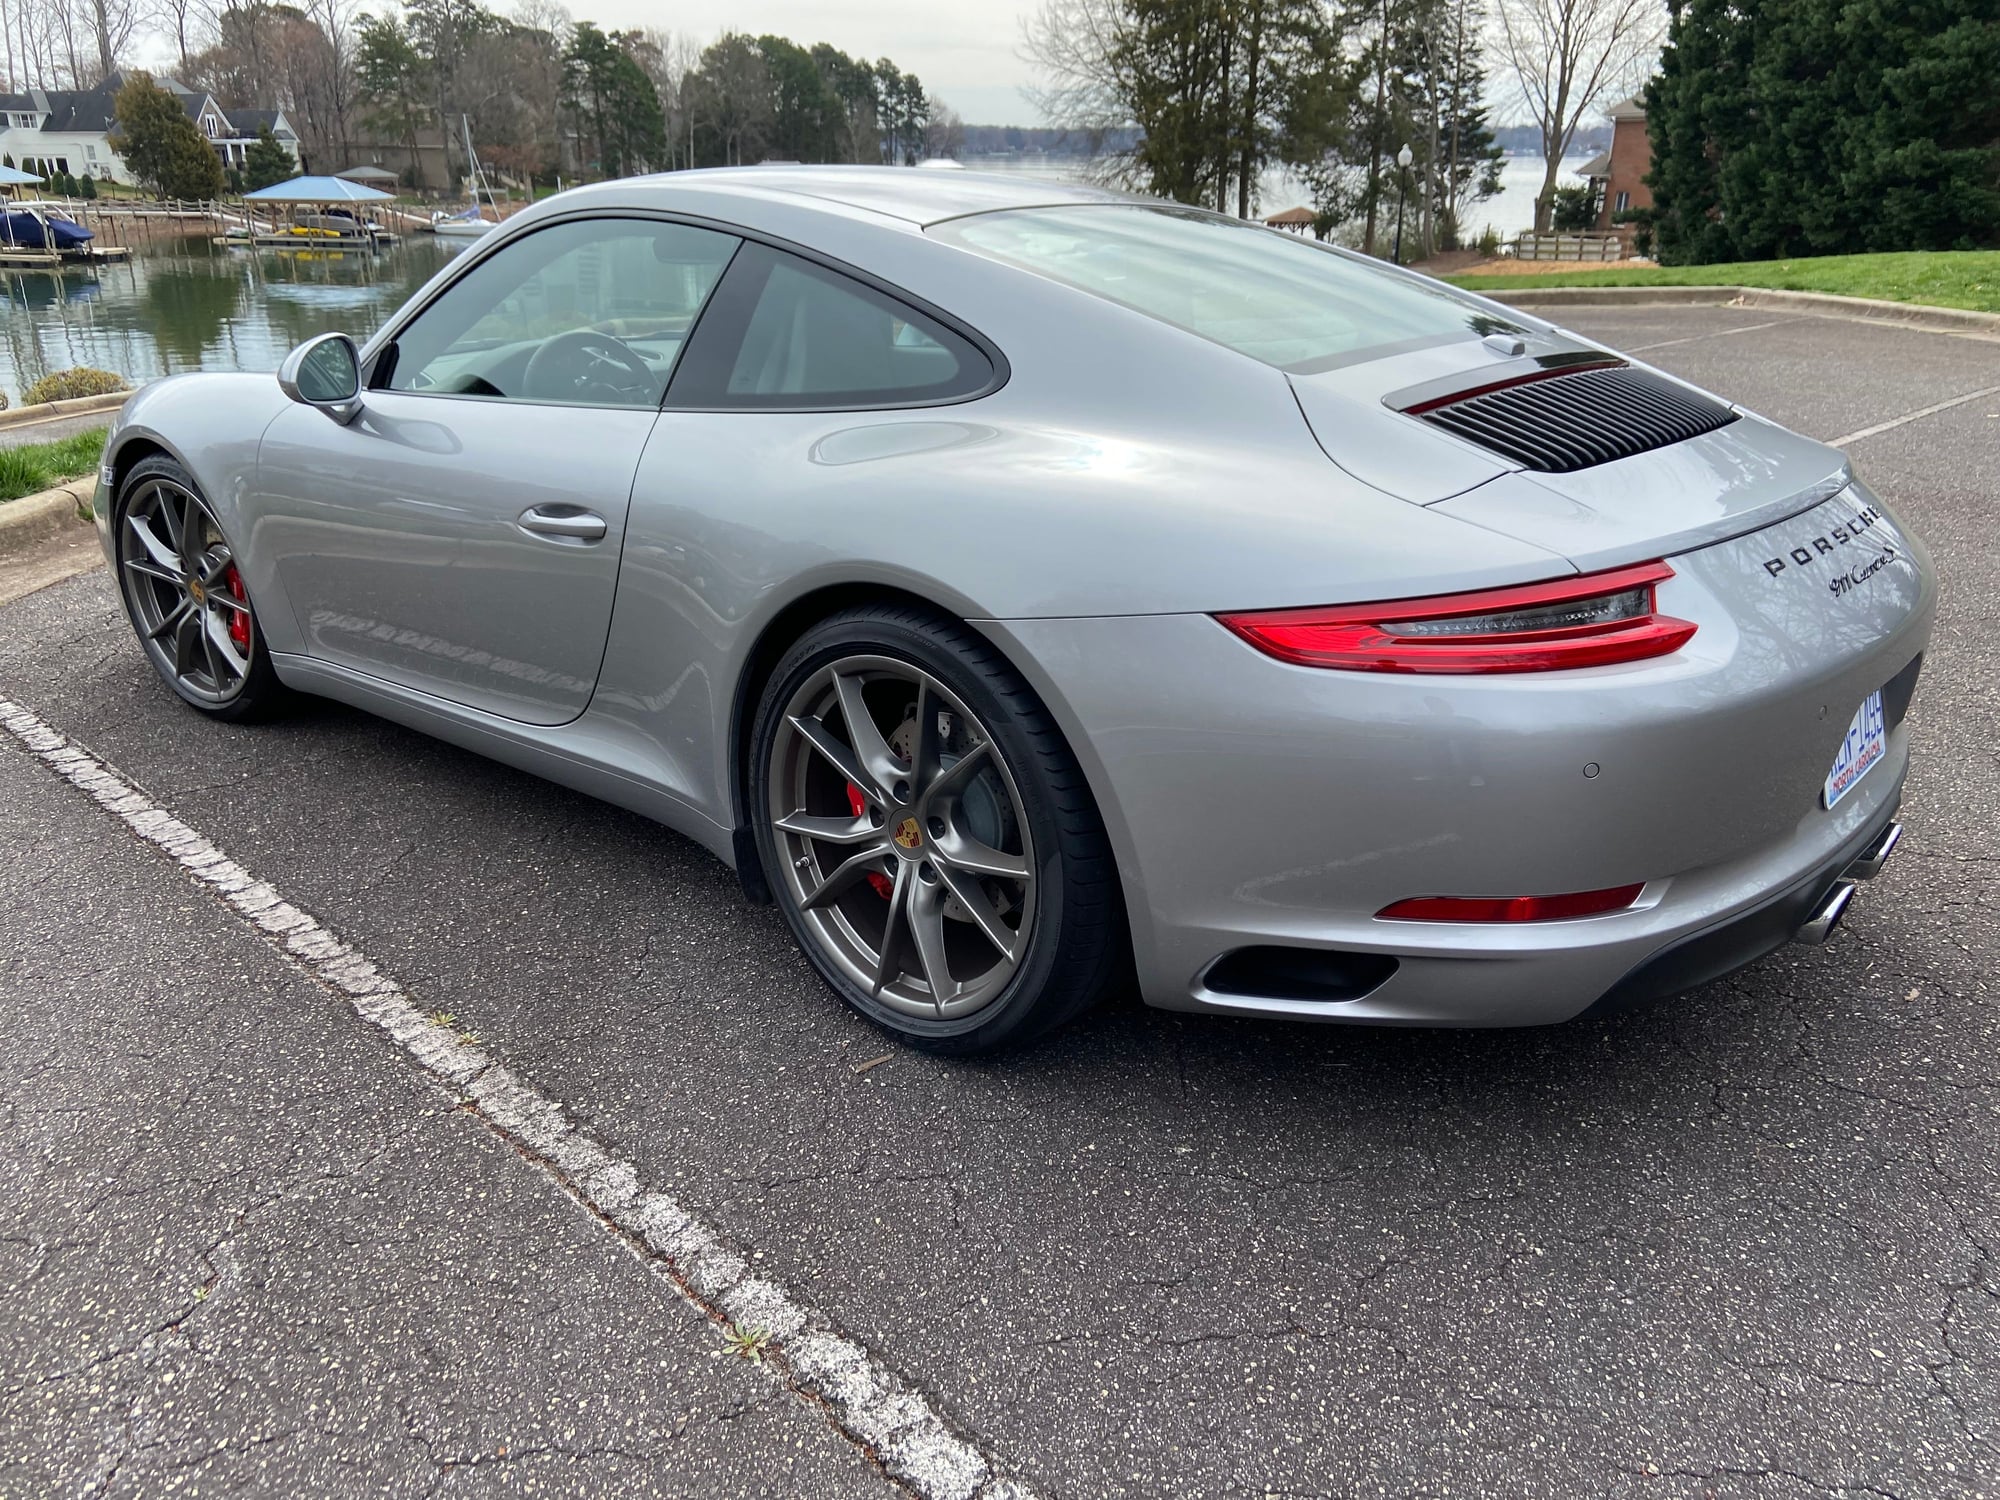 2019 Porsche 911 - FS:  2019 Porsche Carrera S - manual, unique build, CPO till 5/2025 or 5/2026 - Used - VIN WP0AB2A98KS115461 - 5,200 Miles - 6 cyl - 2WD - Manual - Coupe - Silver - Mooresville, NC 28117, United States